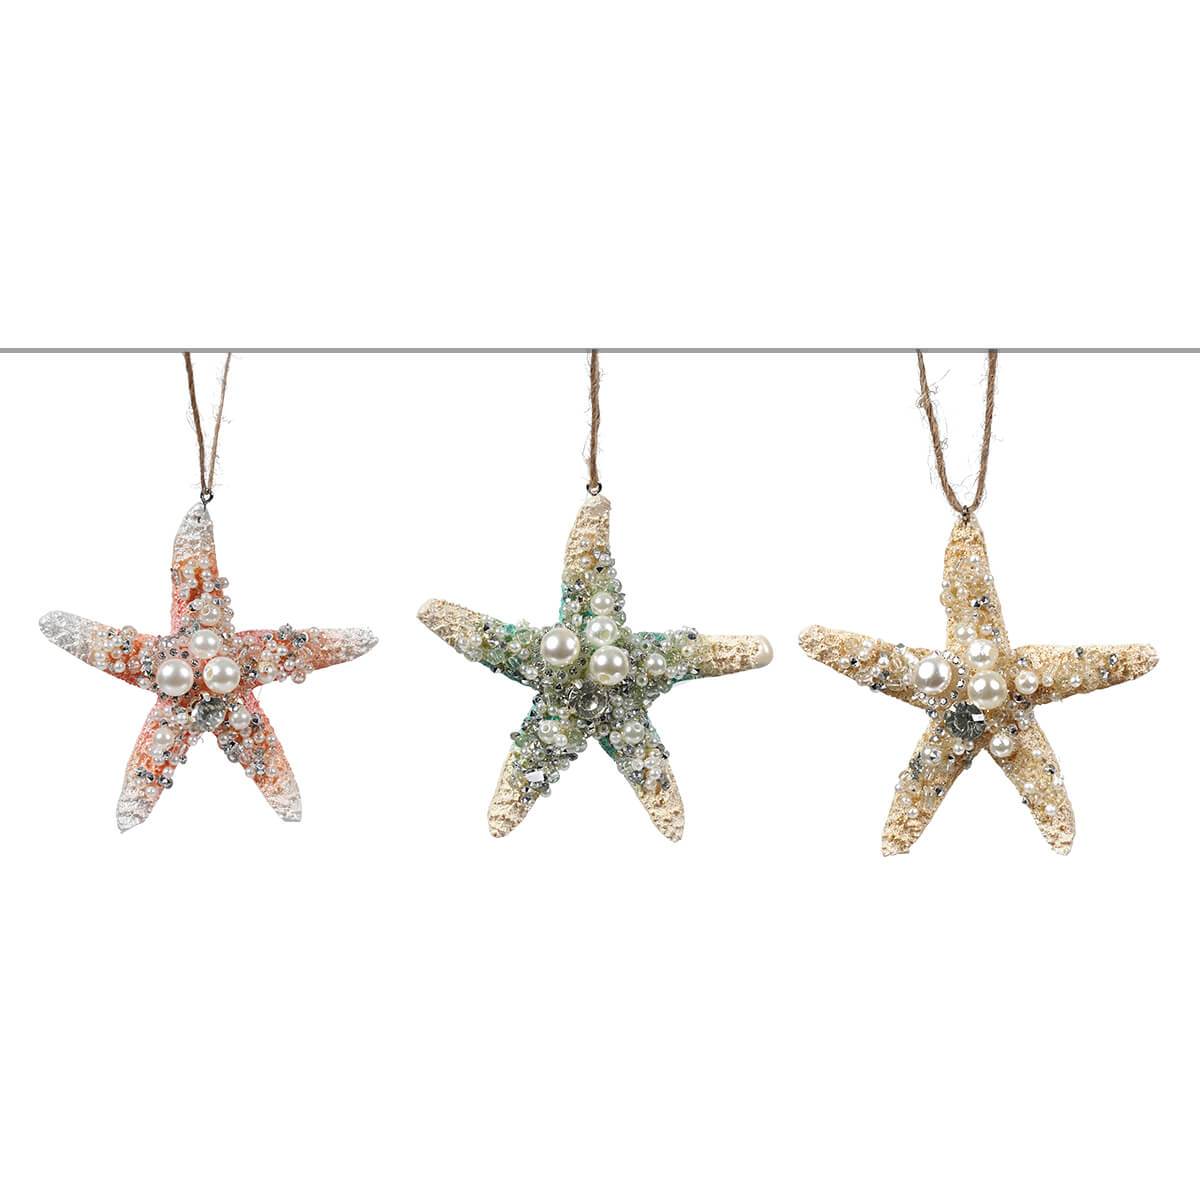 Sea Star Ornaments Set/3